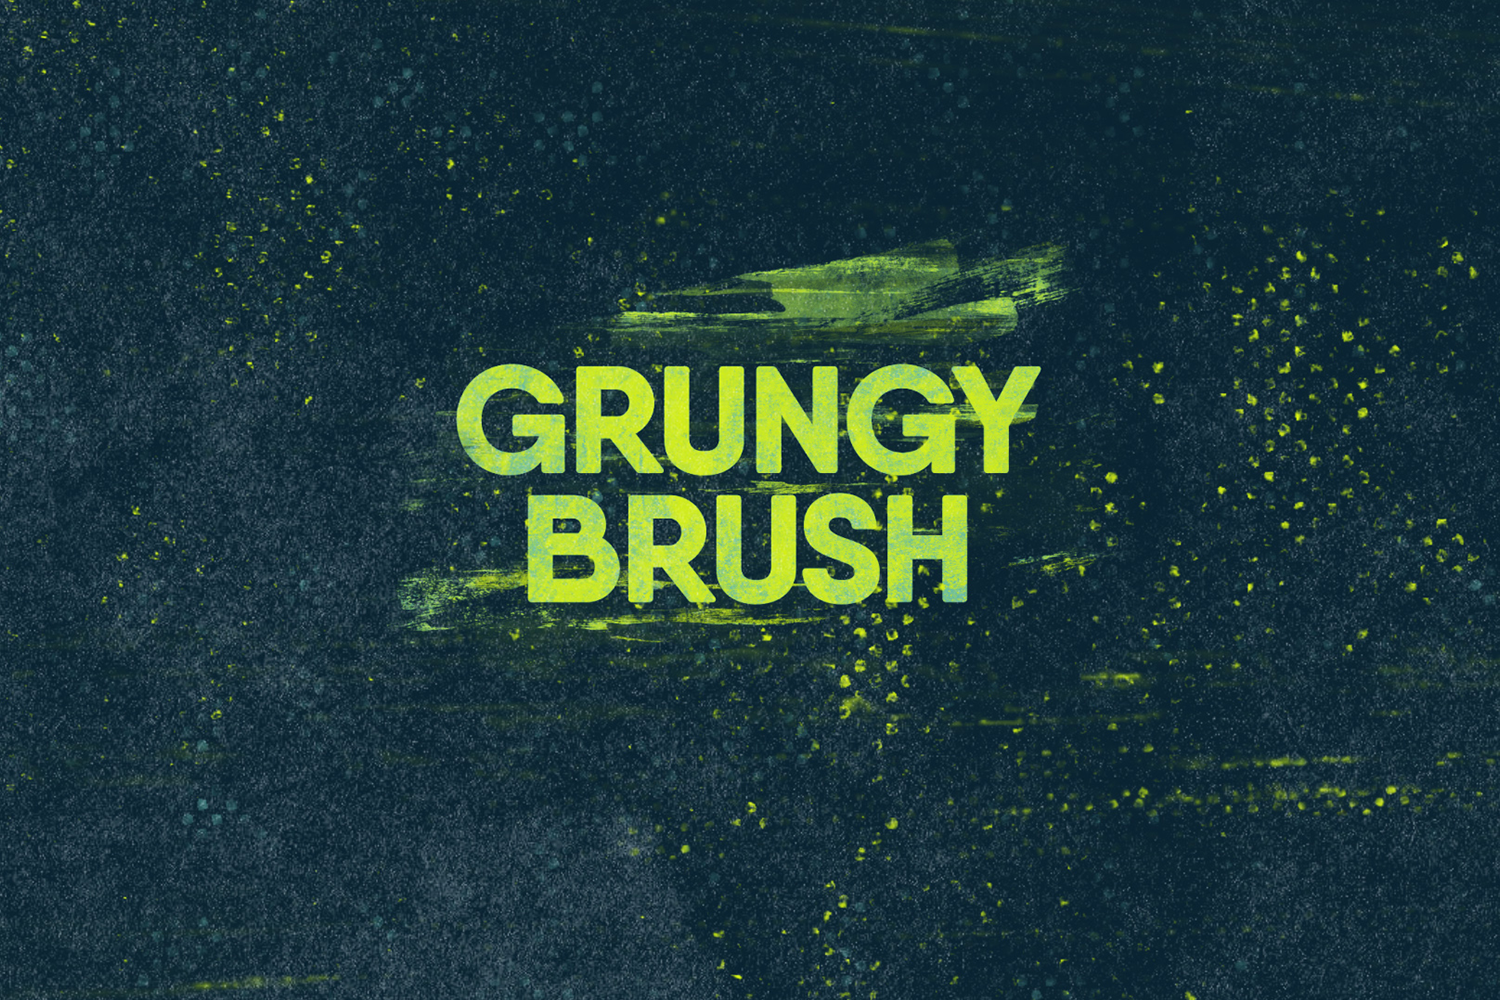 2047 笔刷擦除效果文字标题AE视频模板素材 Grunge Brush Logo